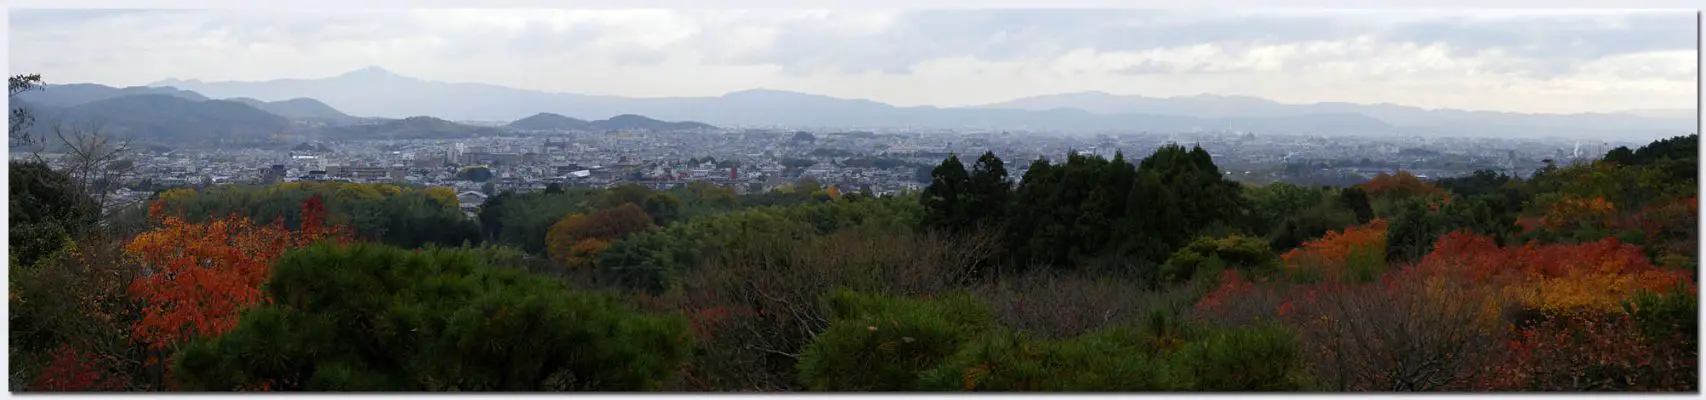 Arashiyama08a.jpg